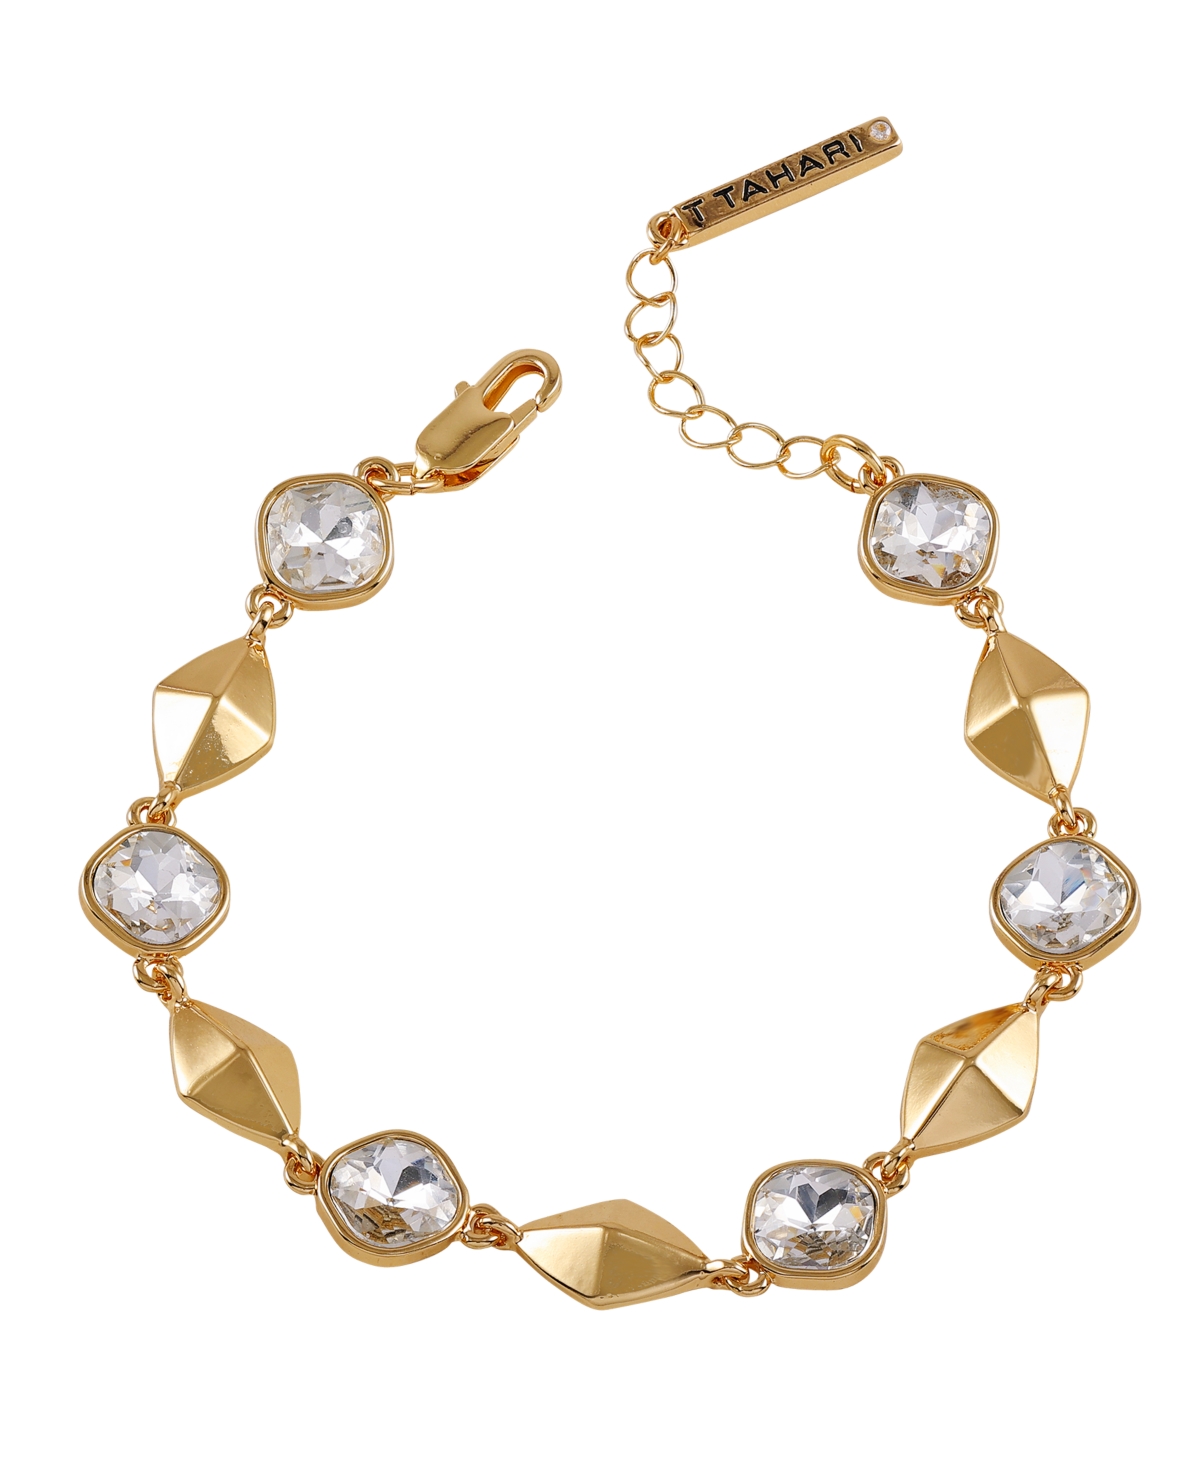 Gold-Tone Pave Glass Stone Line Bracelet - Gold